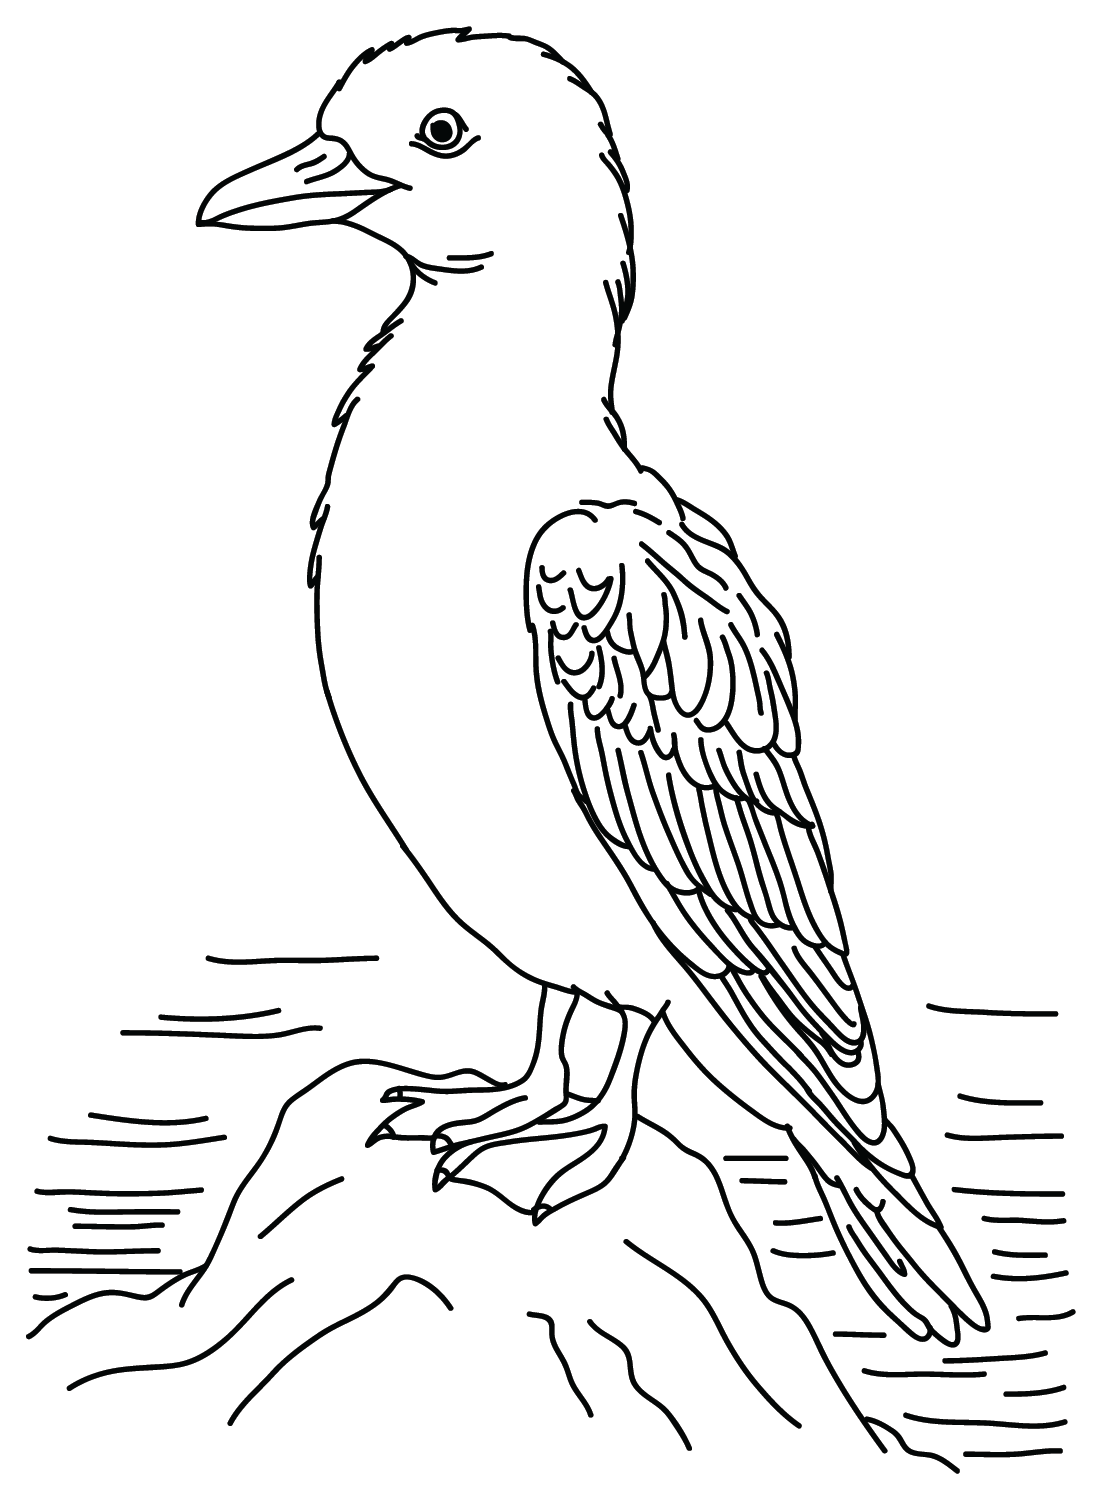 Картинки альбатросов для раскрашивания из Альбатроса